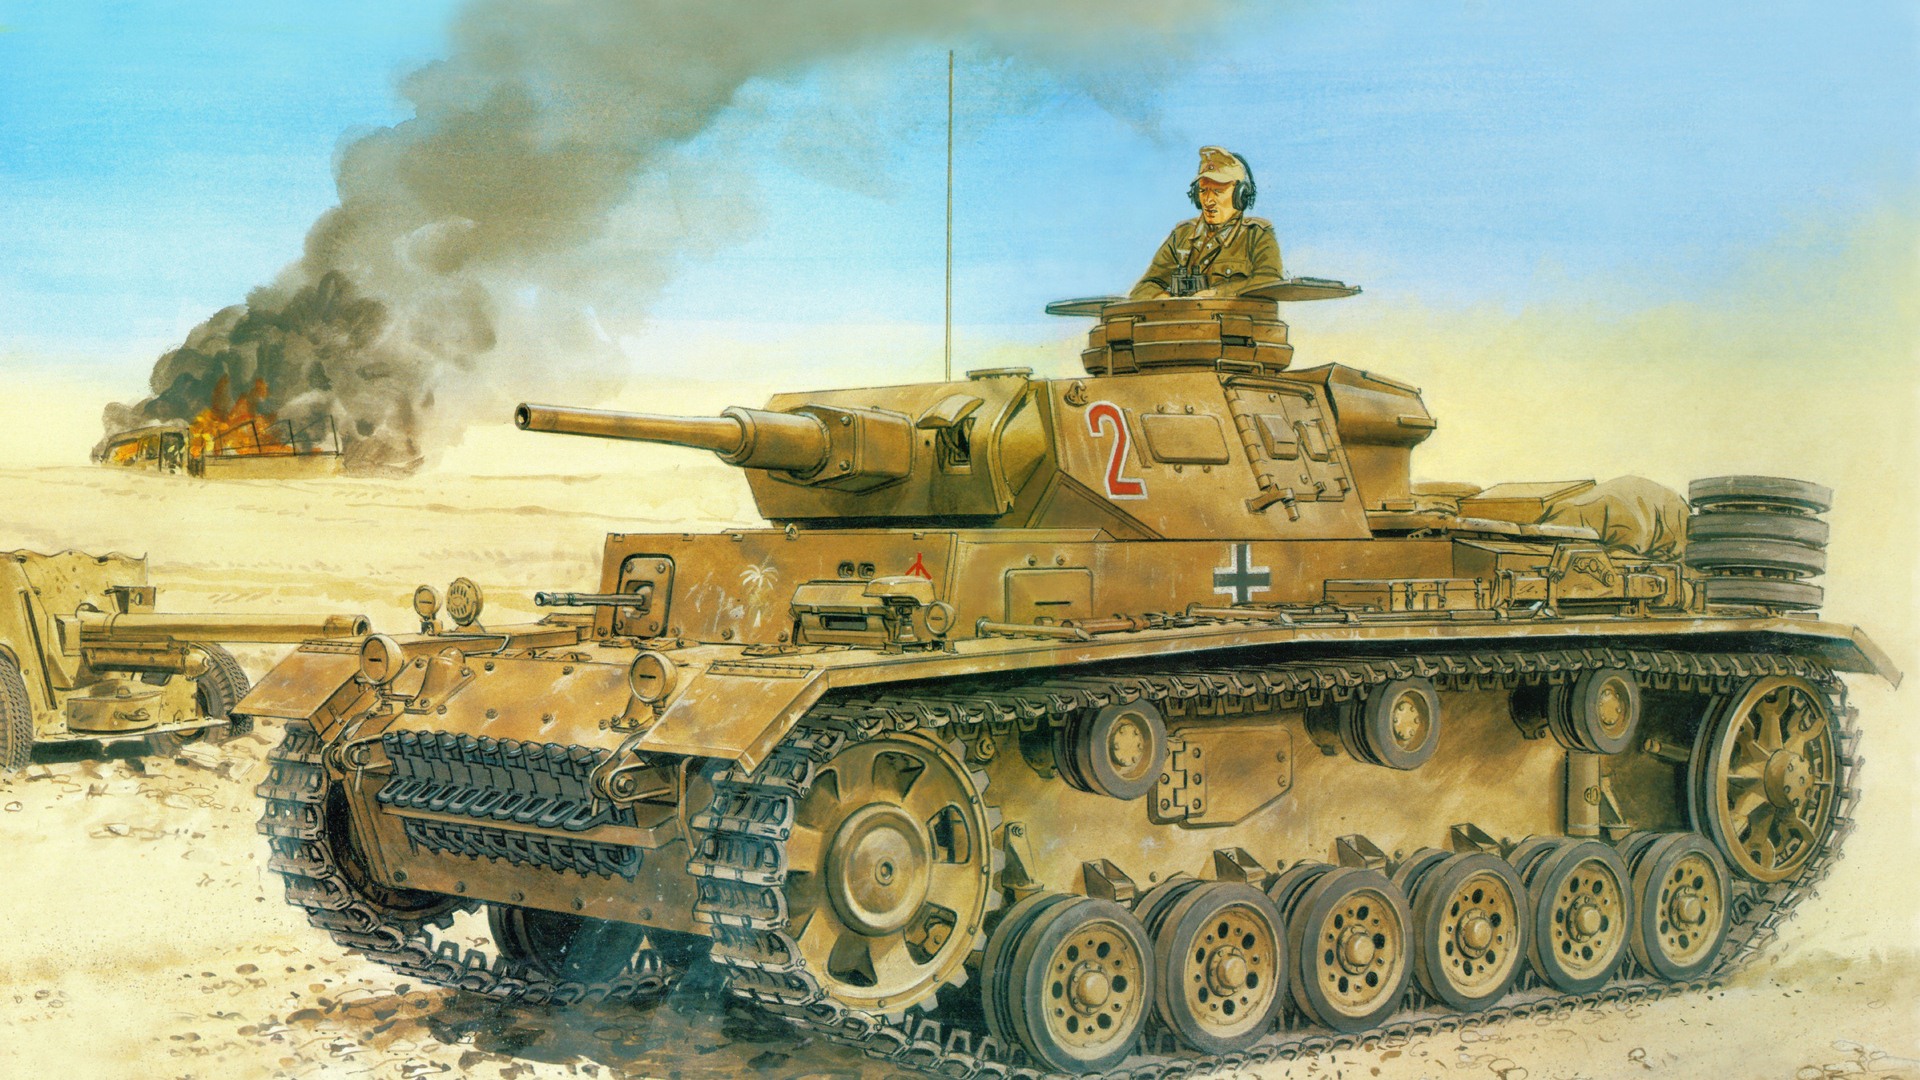 軍の戦車、装甲HDの絵画壁紙 #7 - 1920x1080